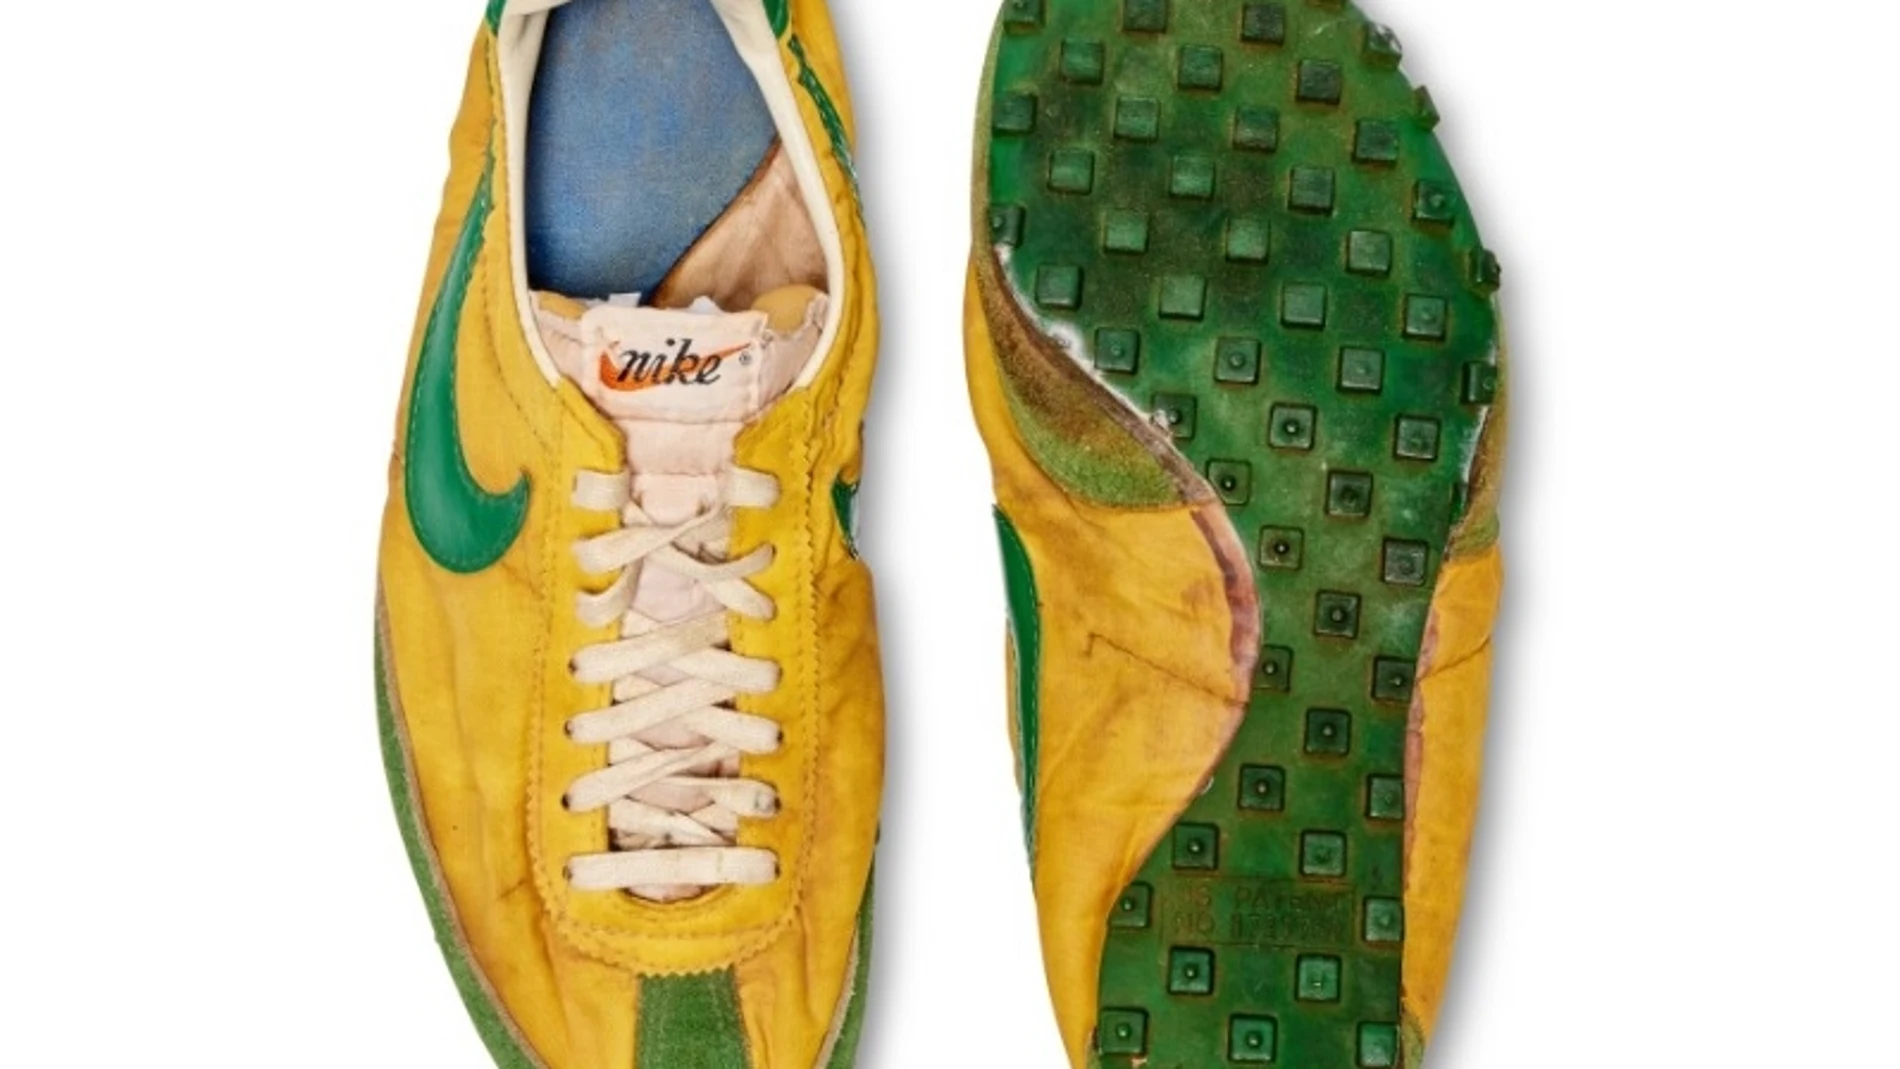 Zapatillas Nike que pertenecieron al campeón estadounidense de atletismo Steve Prefontaine.